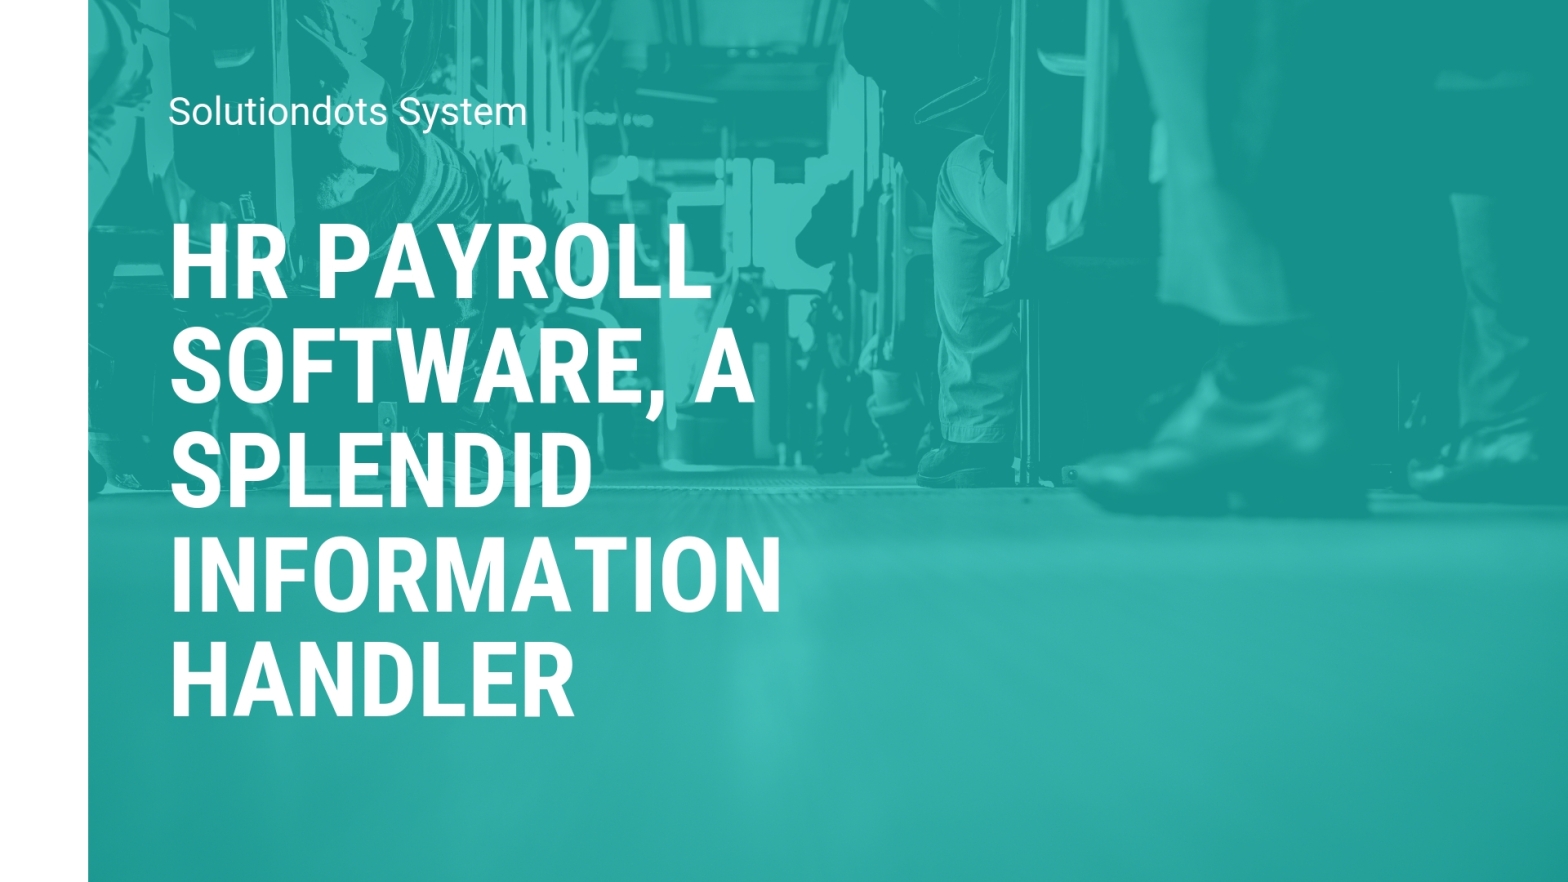 HR payroll software